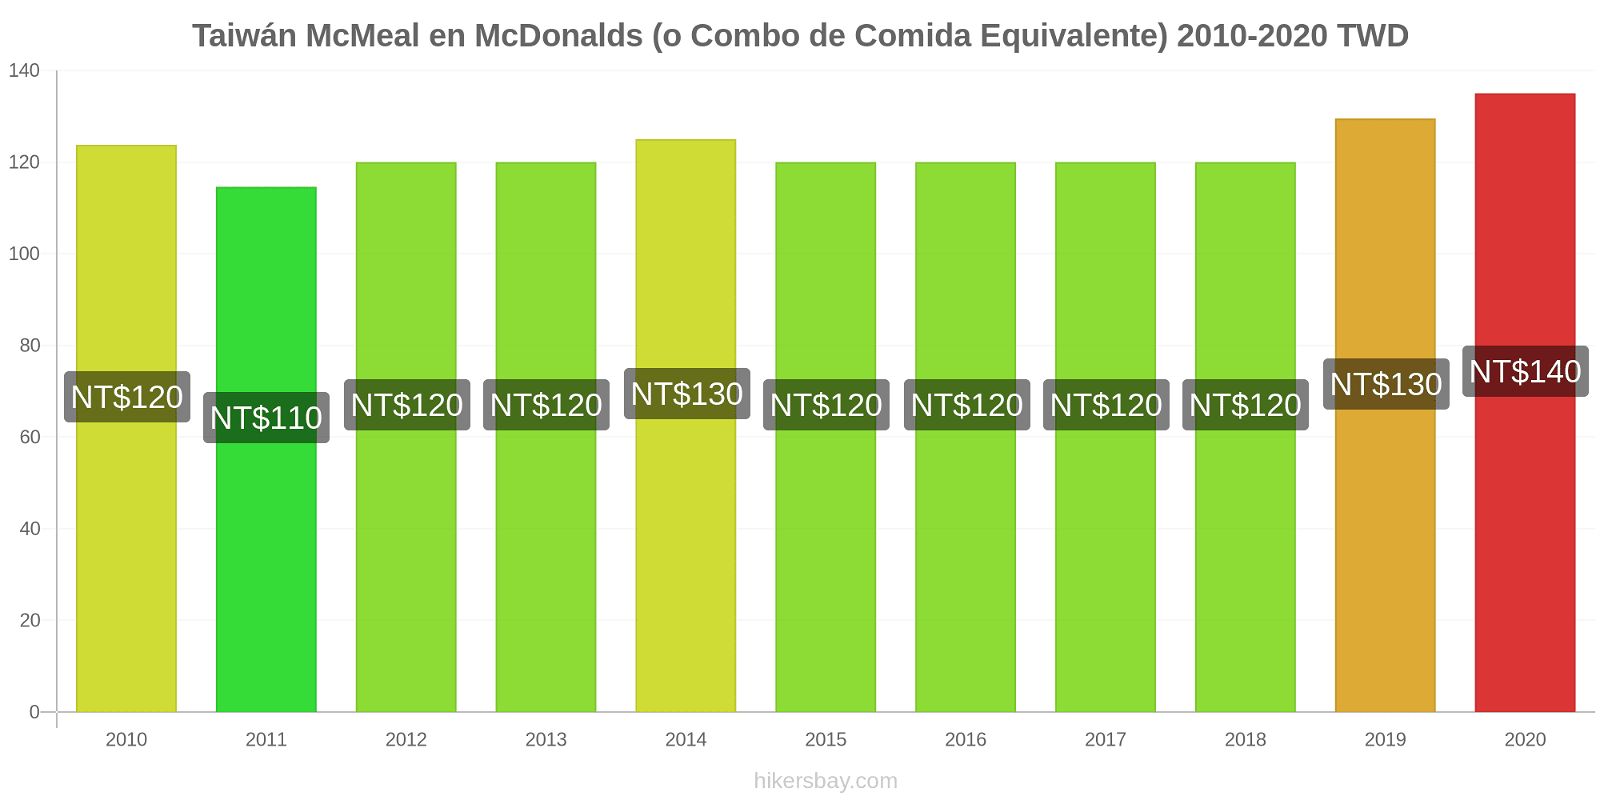 Taiwán cambios de precios McMeal en McDonalds (o menú equivalente) hikersbay.com